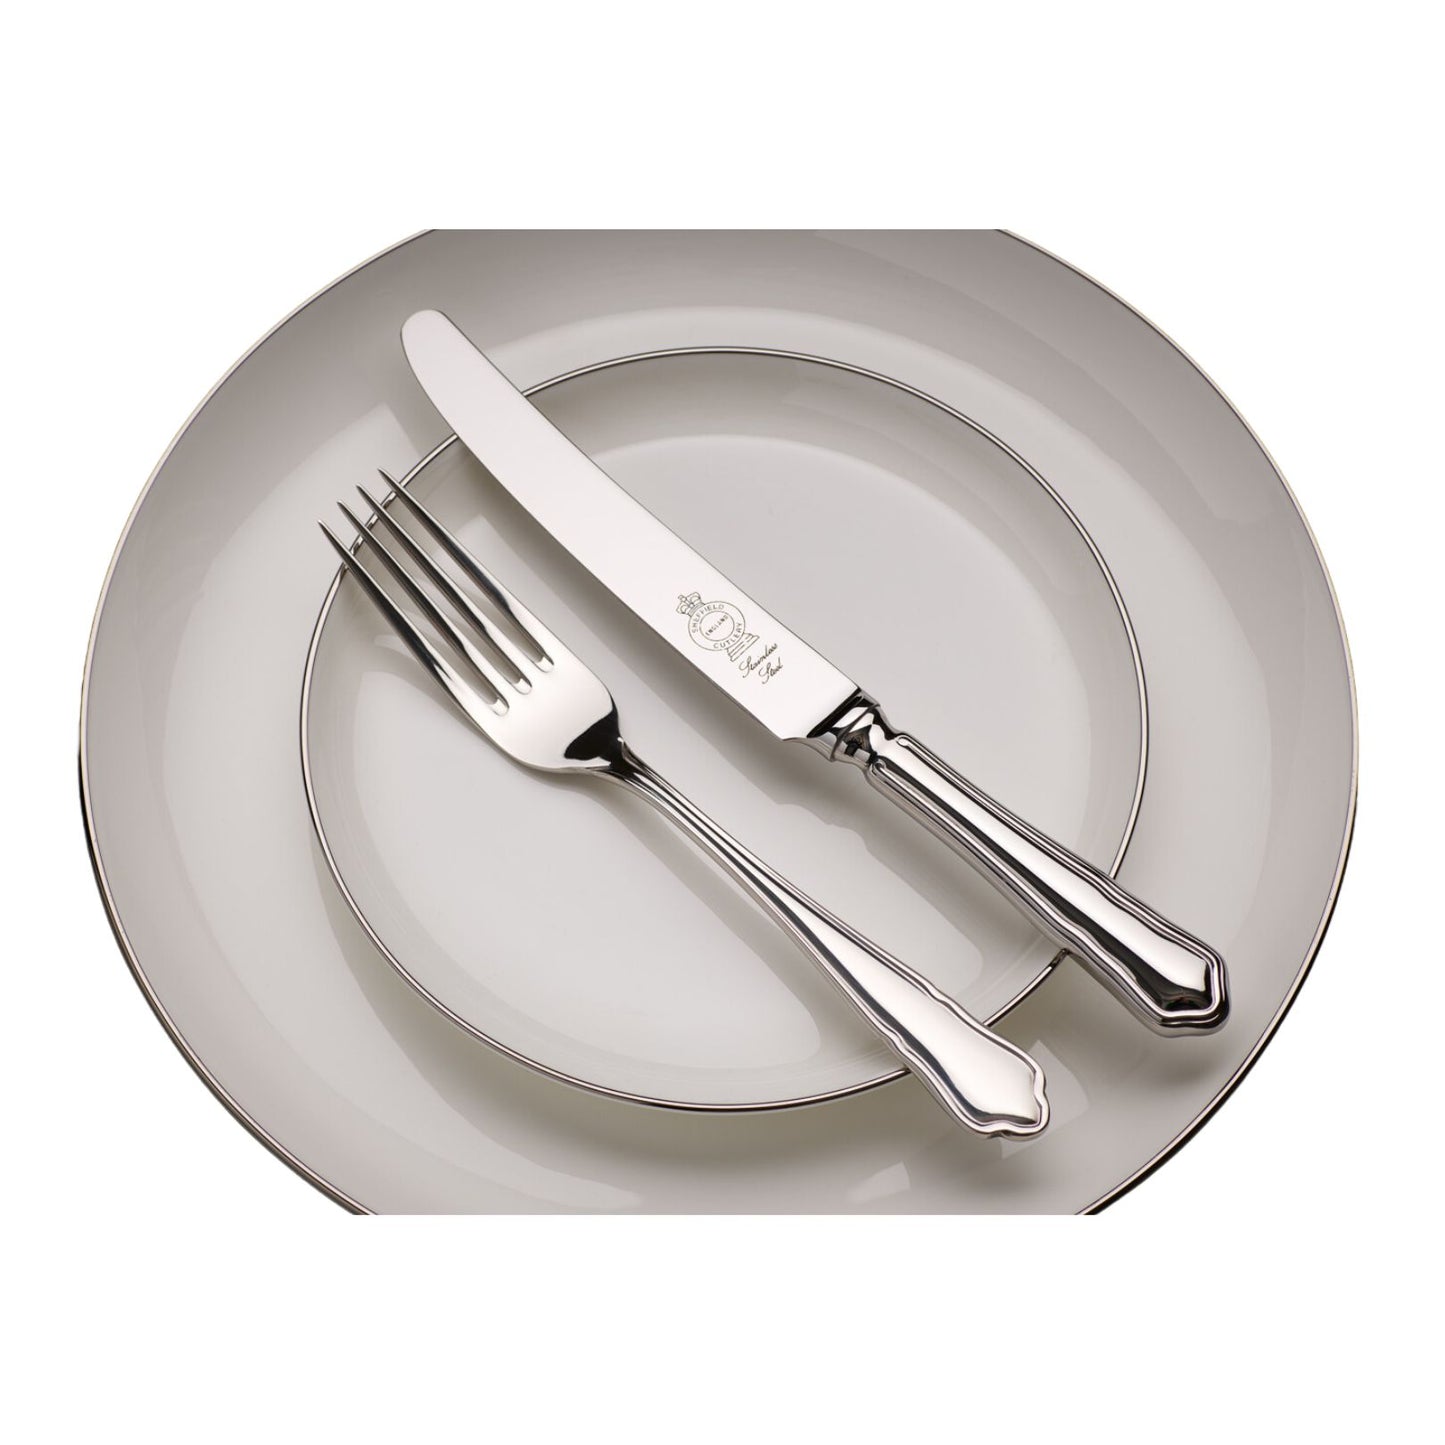 Dubarry flatware cutlery set